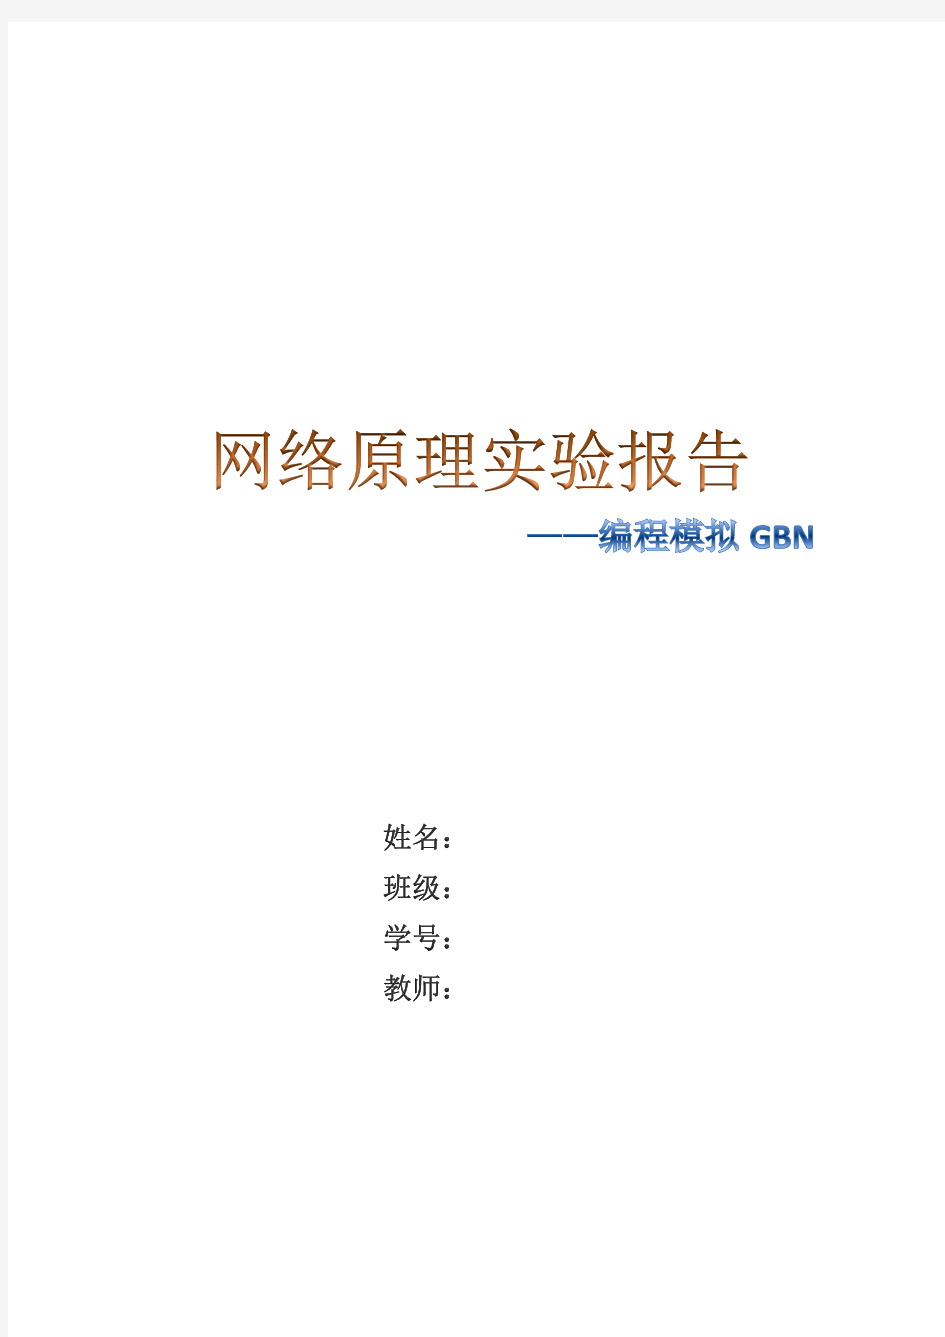 网络原理实验报告(GBN)